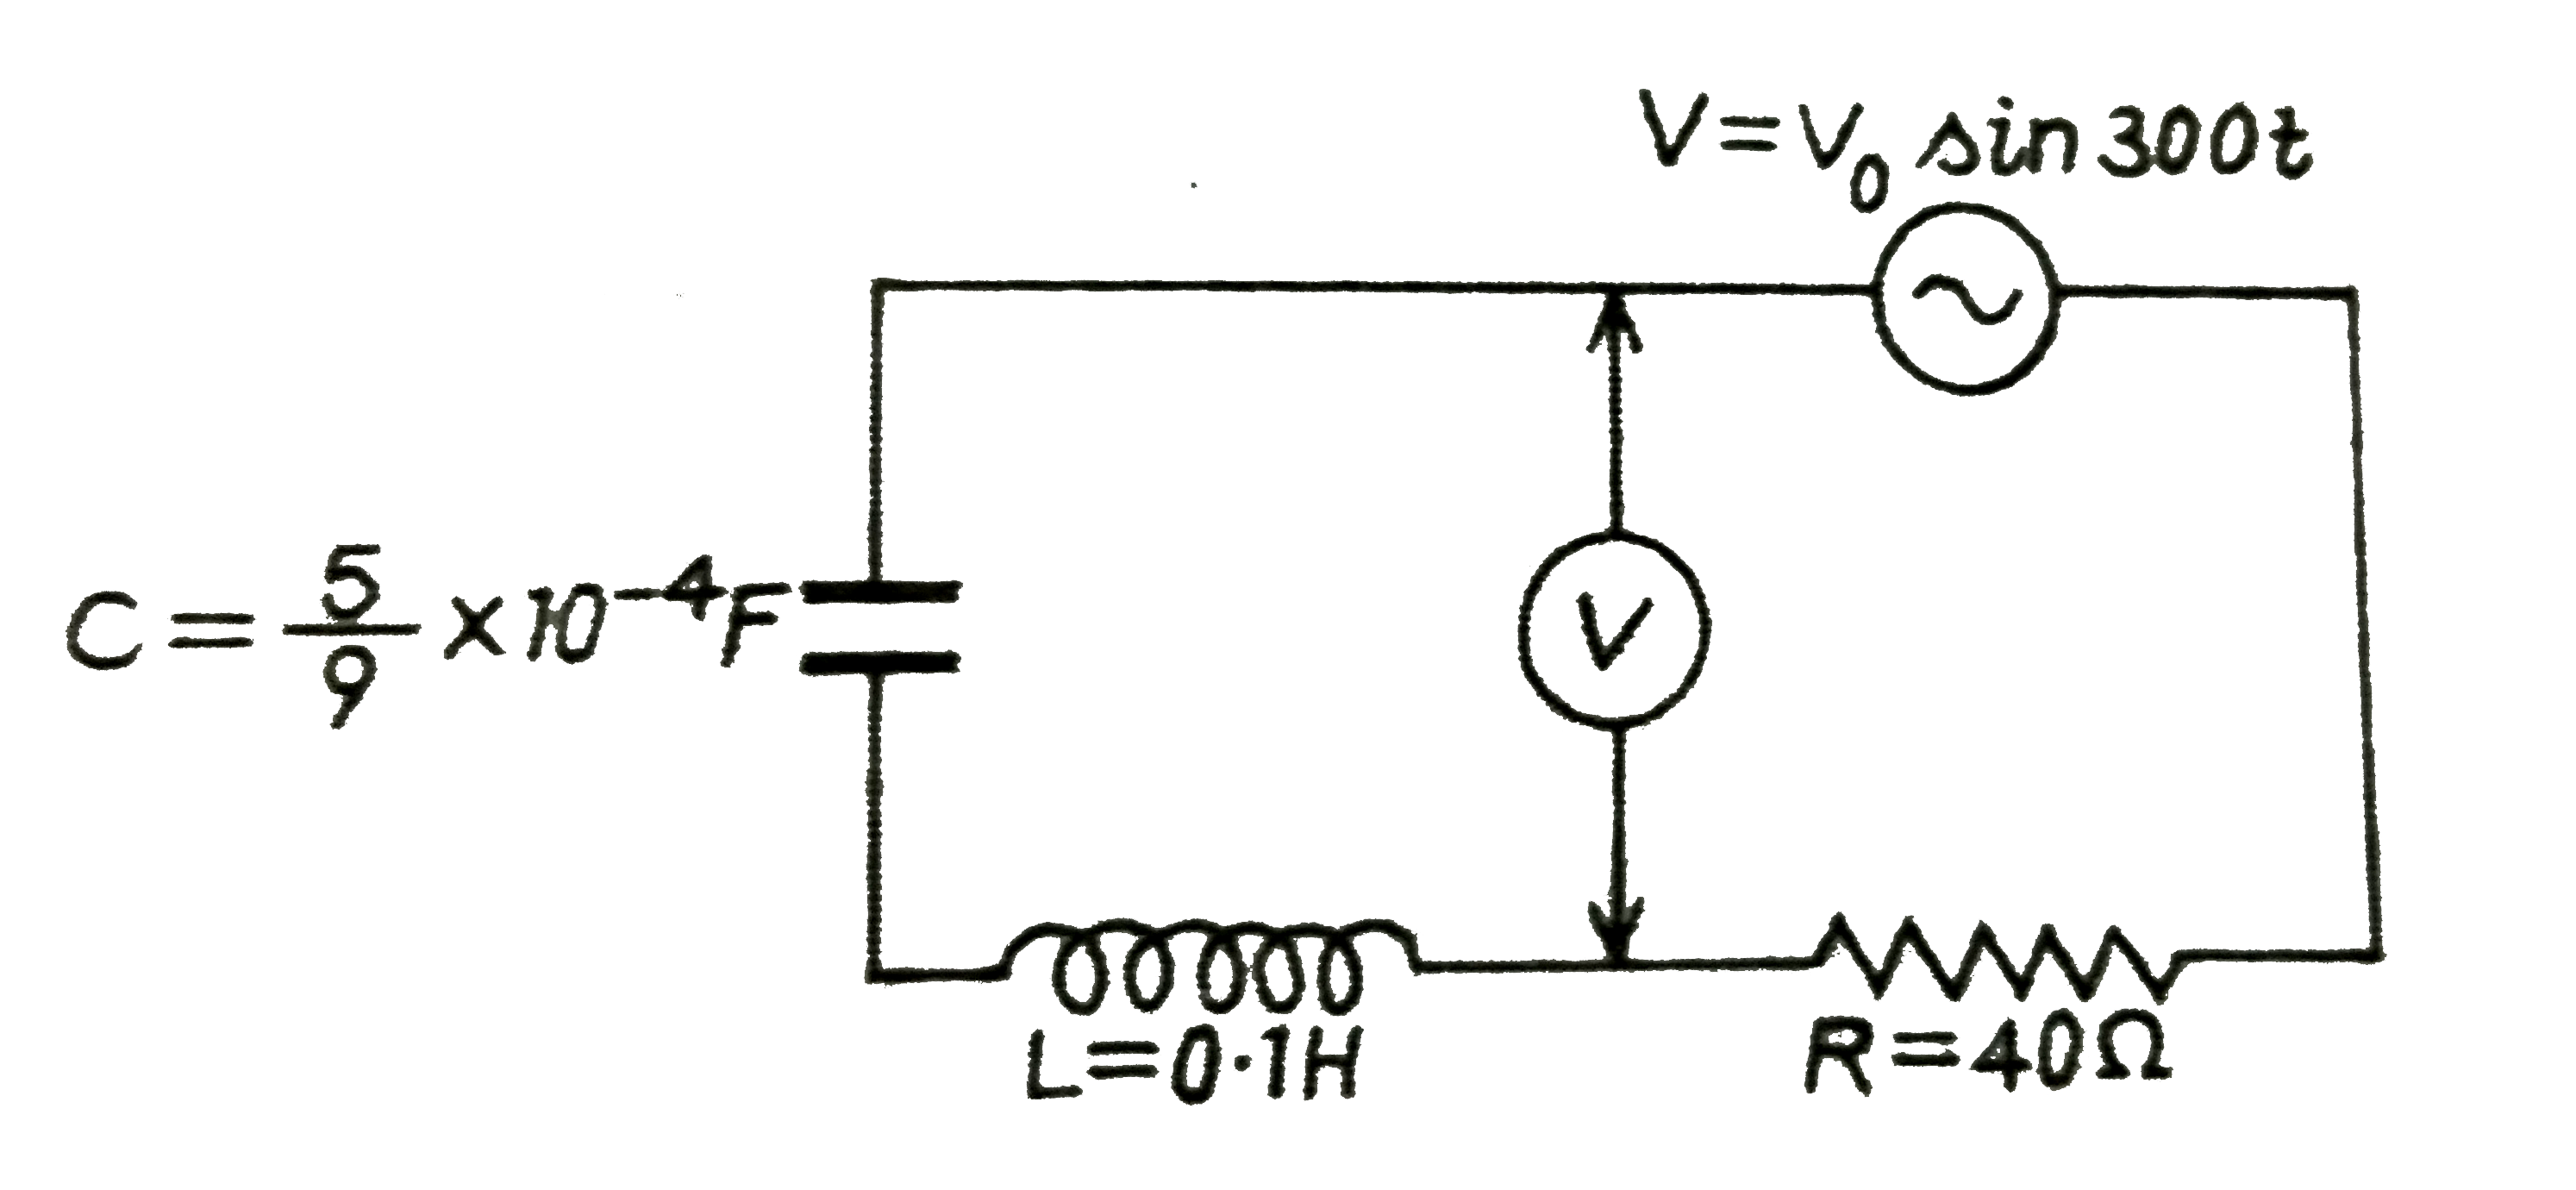 यदि  दर्शाया गए परिपथ में लगा वोल्ट्मीटर (V )30 वोल्ट पढ़ता है,तो V0 का मान ज्ञात कीजिए|